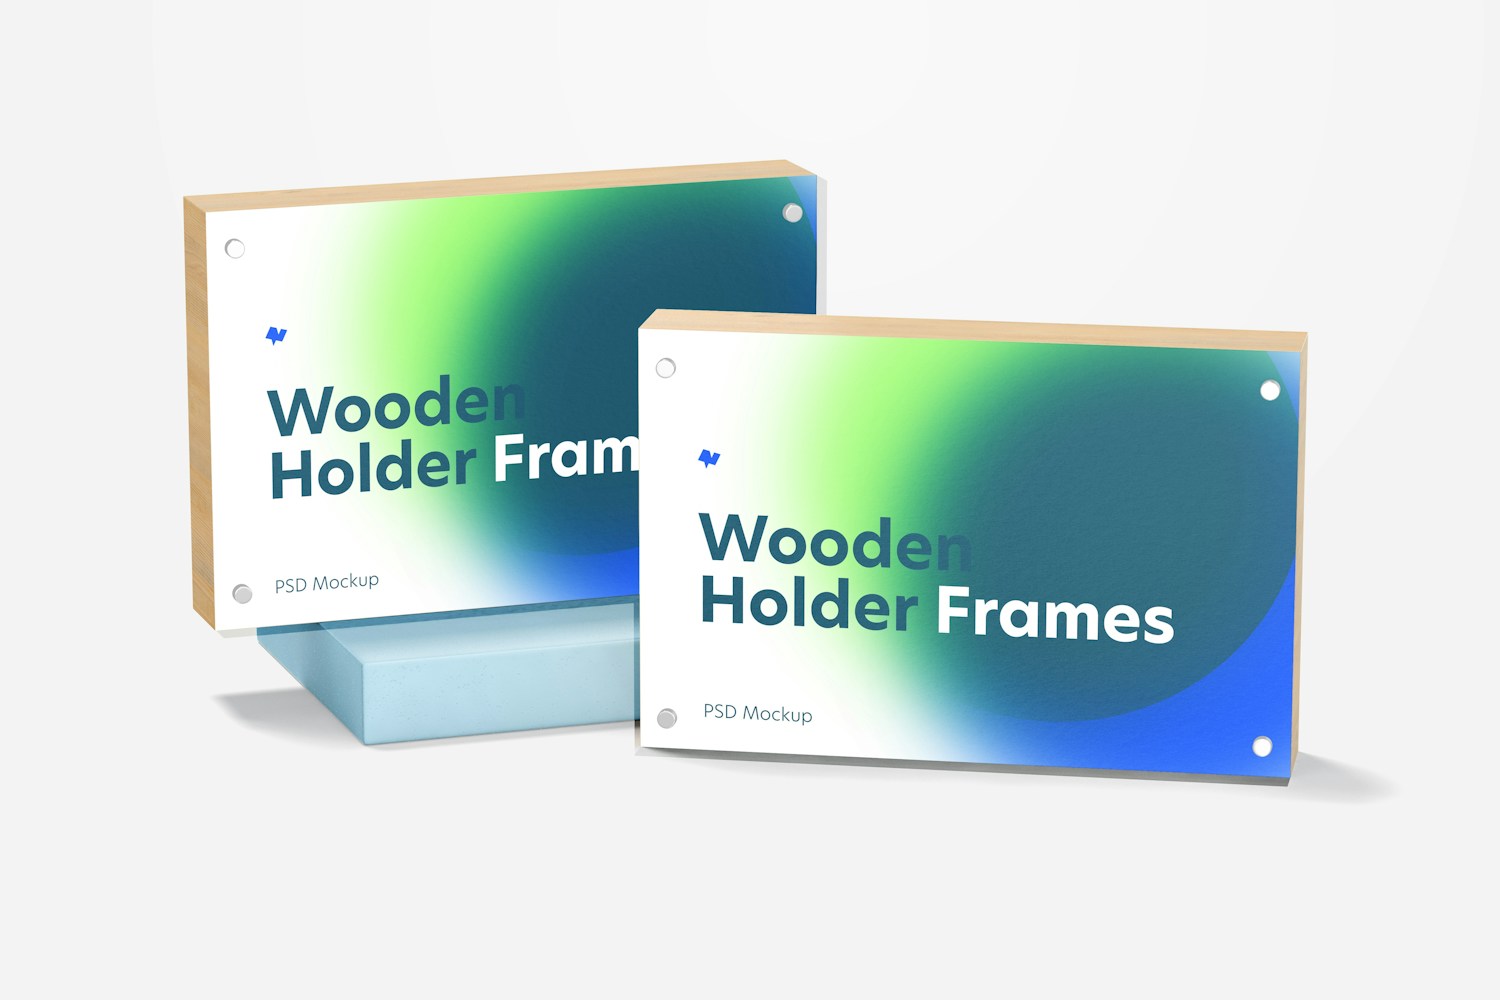 Wooden Label Holder Frames Mockup, Perspective